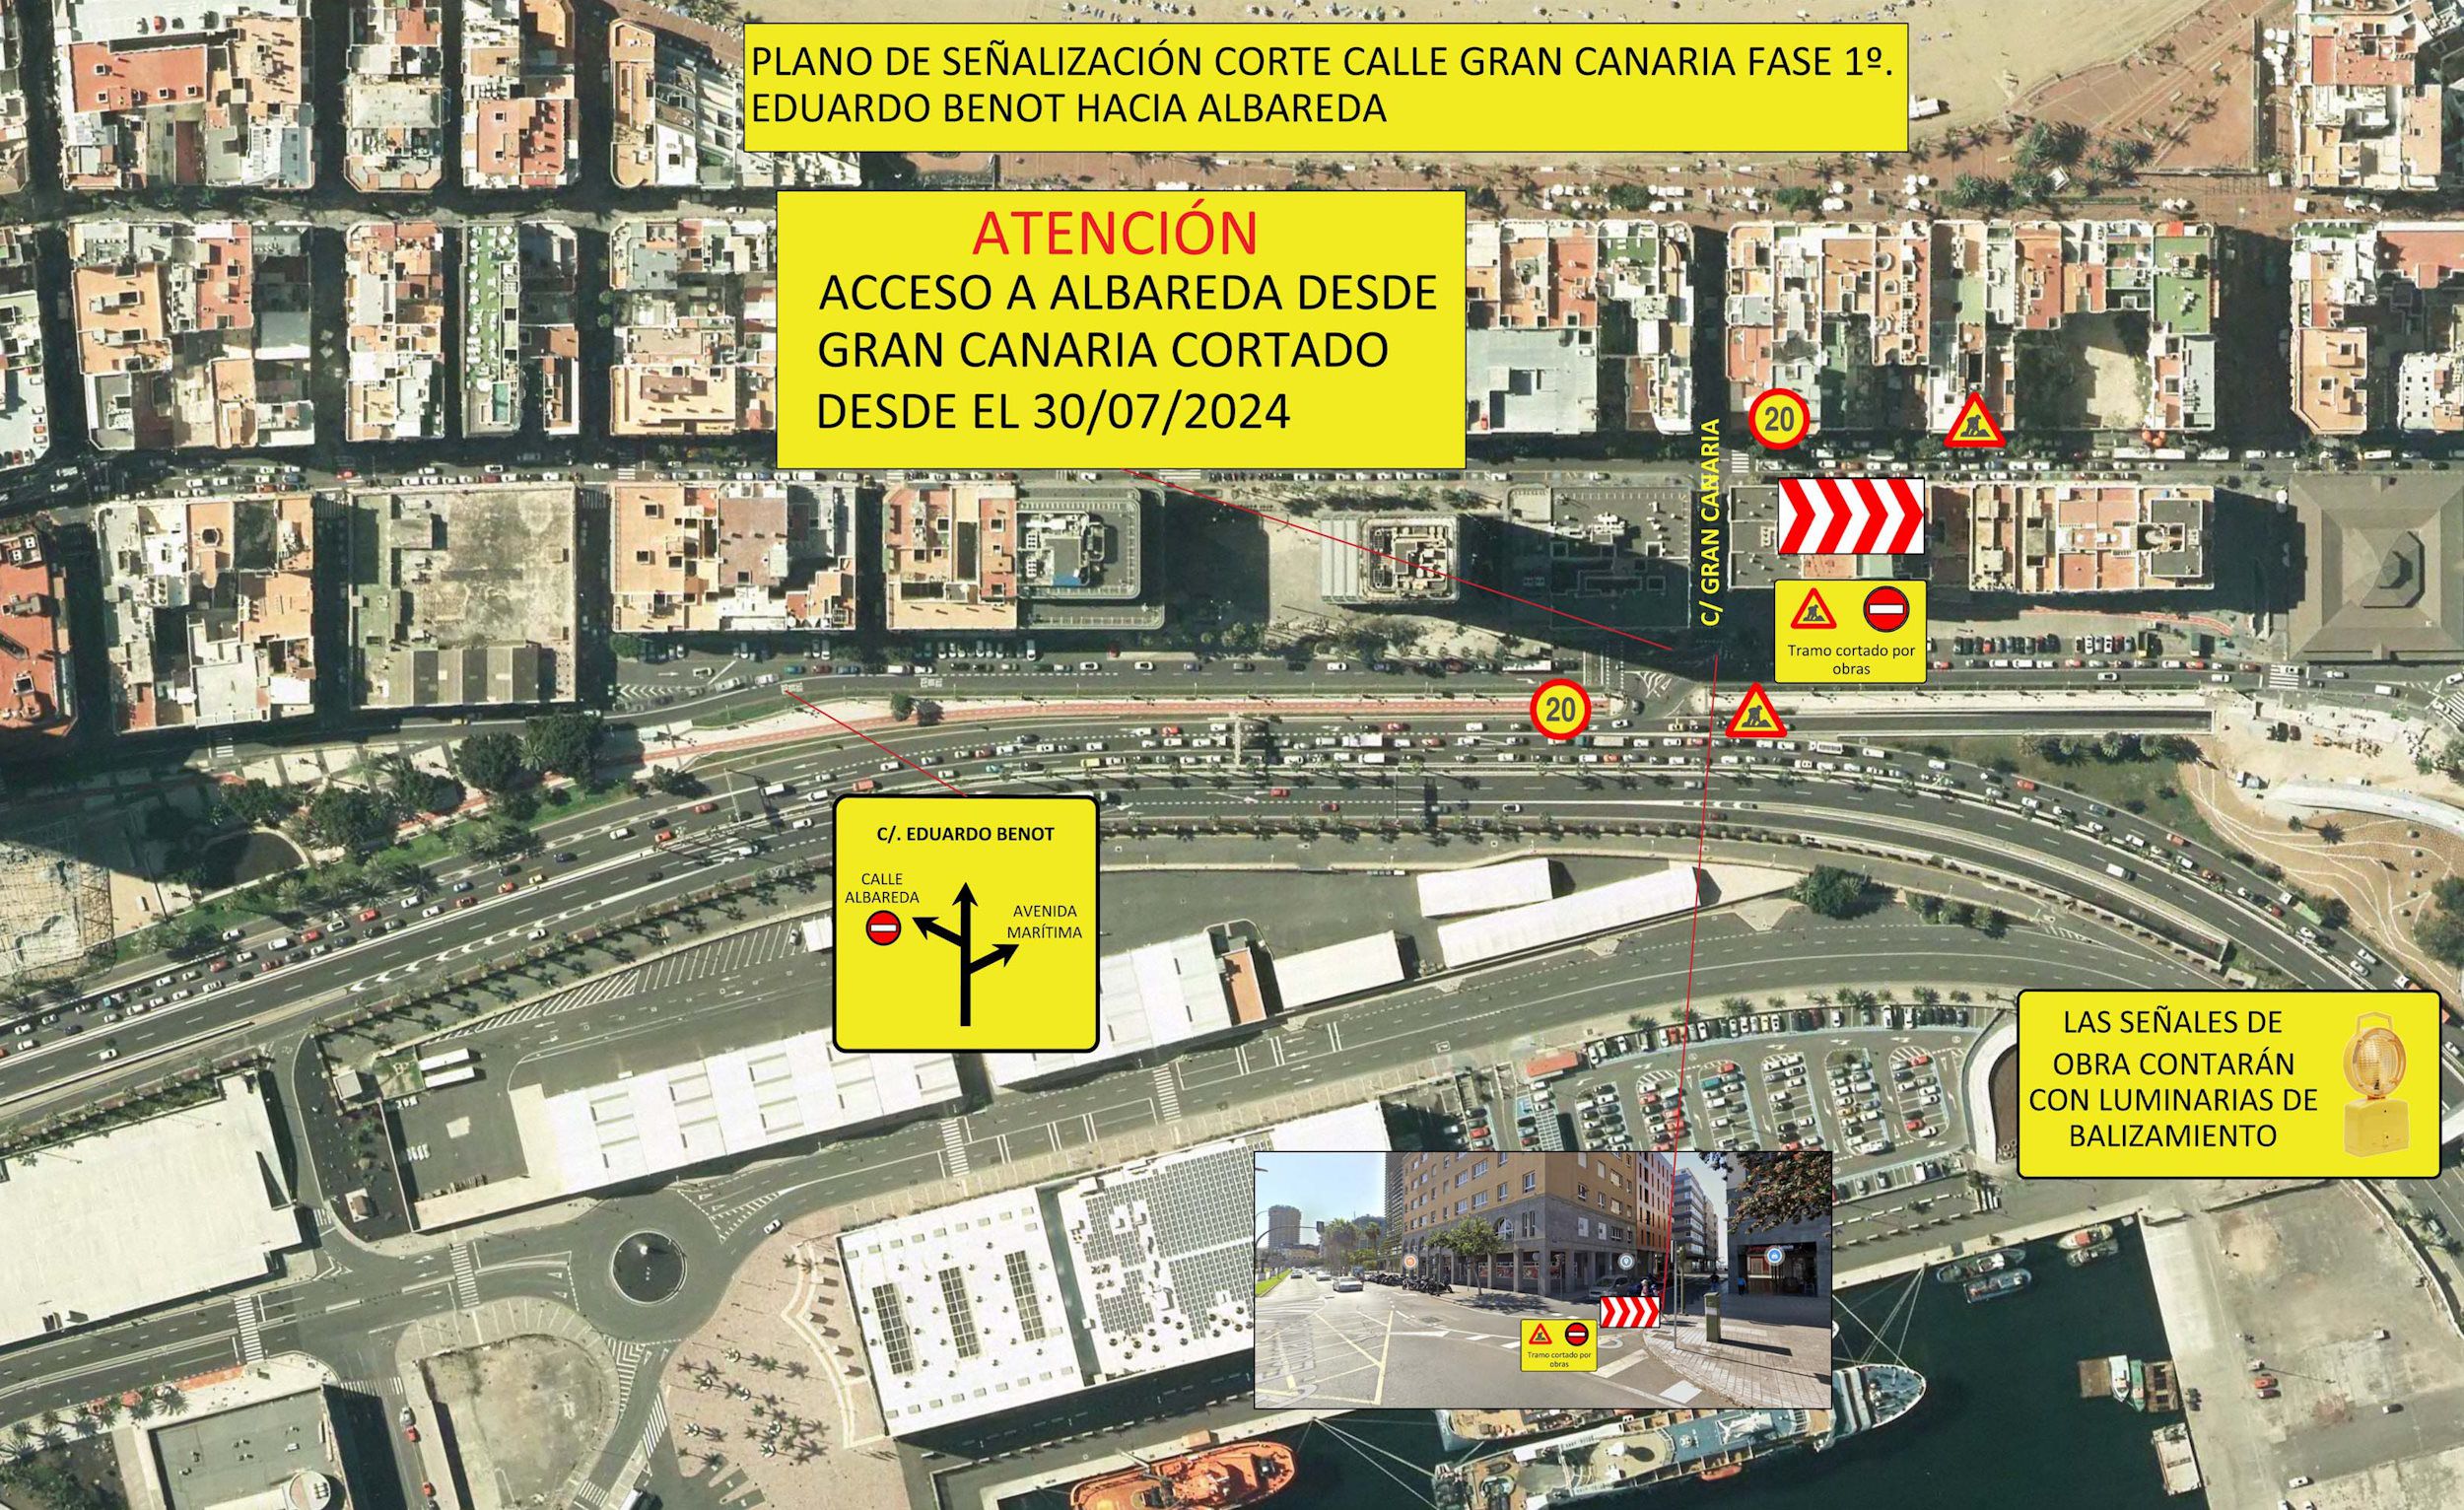 Las obras de la Metroguagua cerrarán al tráfico el carril de acceso a Albareda desde la calle Gran Canaria